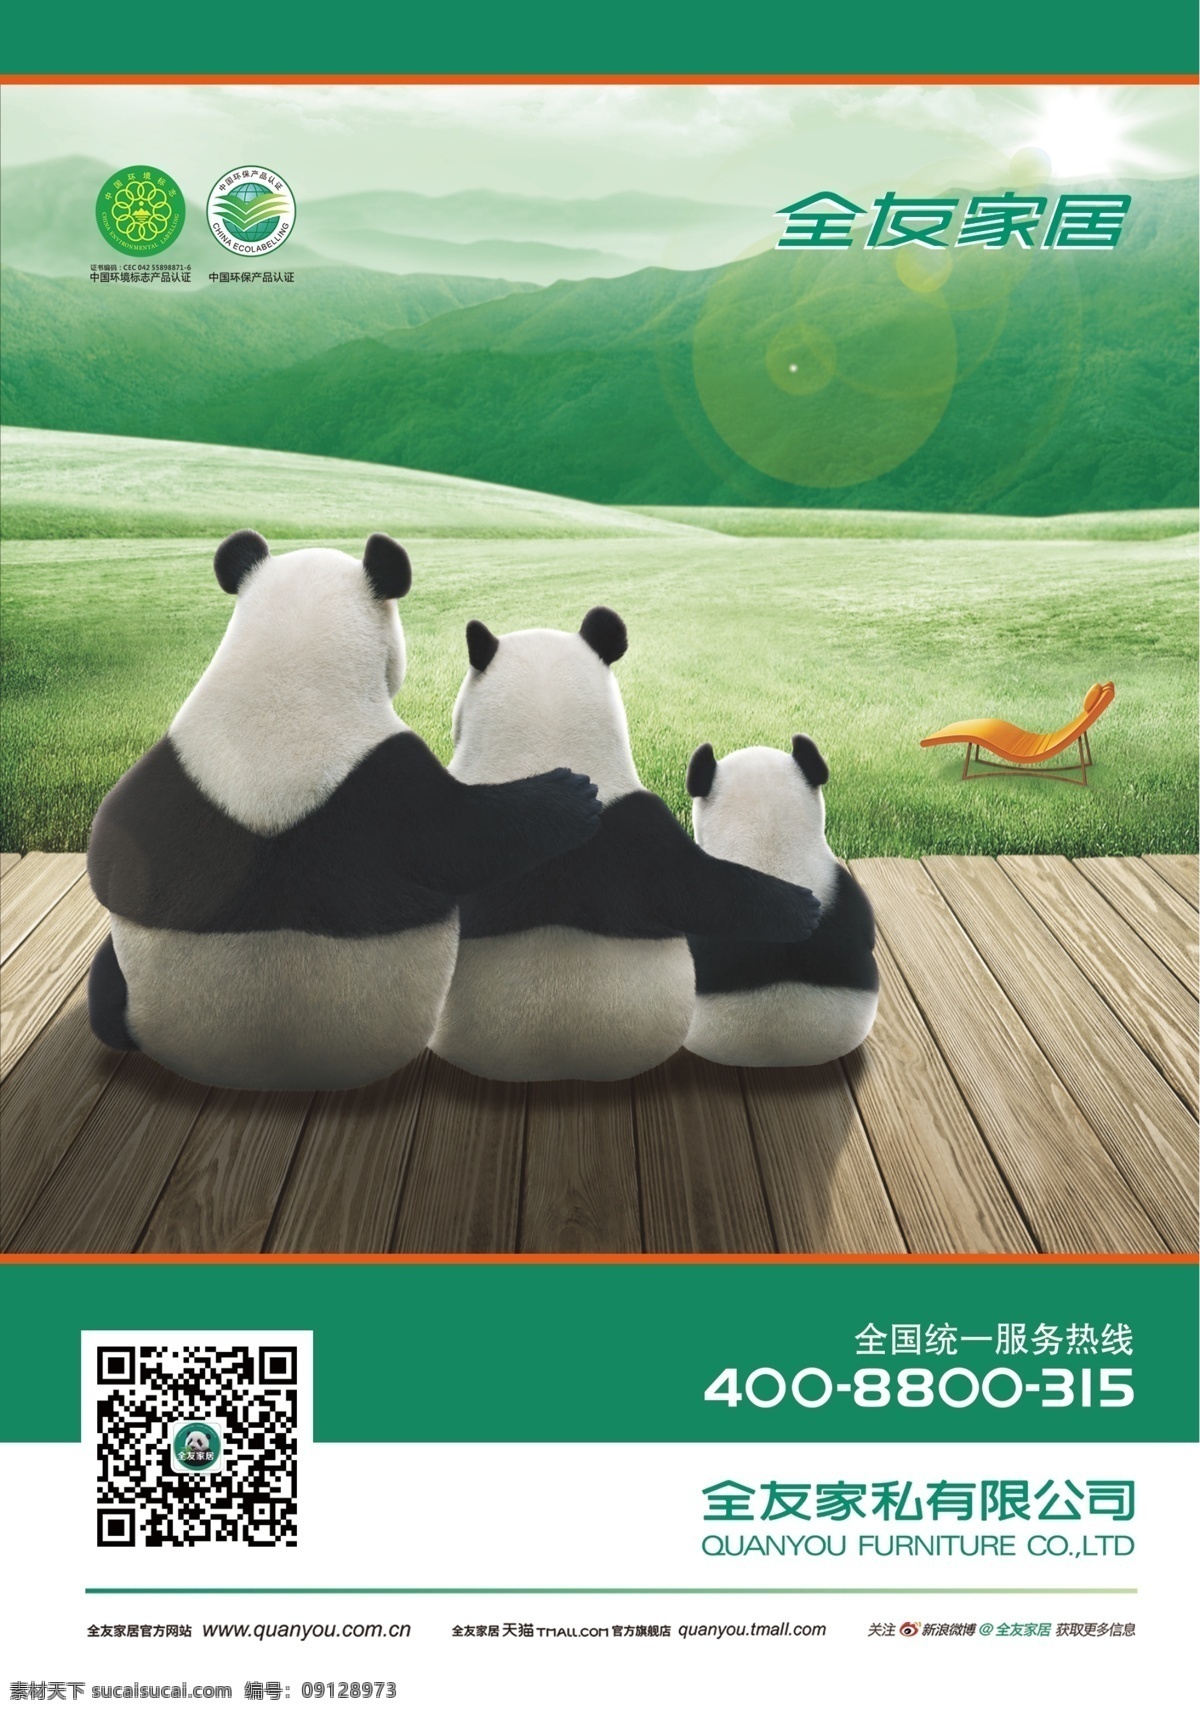 全友单页 全友家私 熊猫 草地 自然 单页 宣传单 灰色